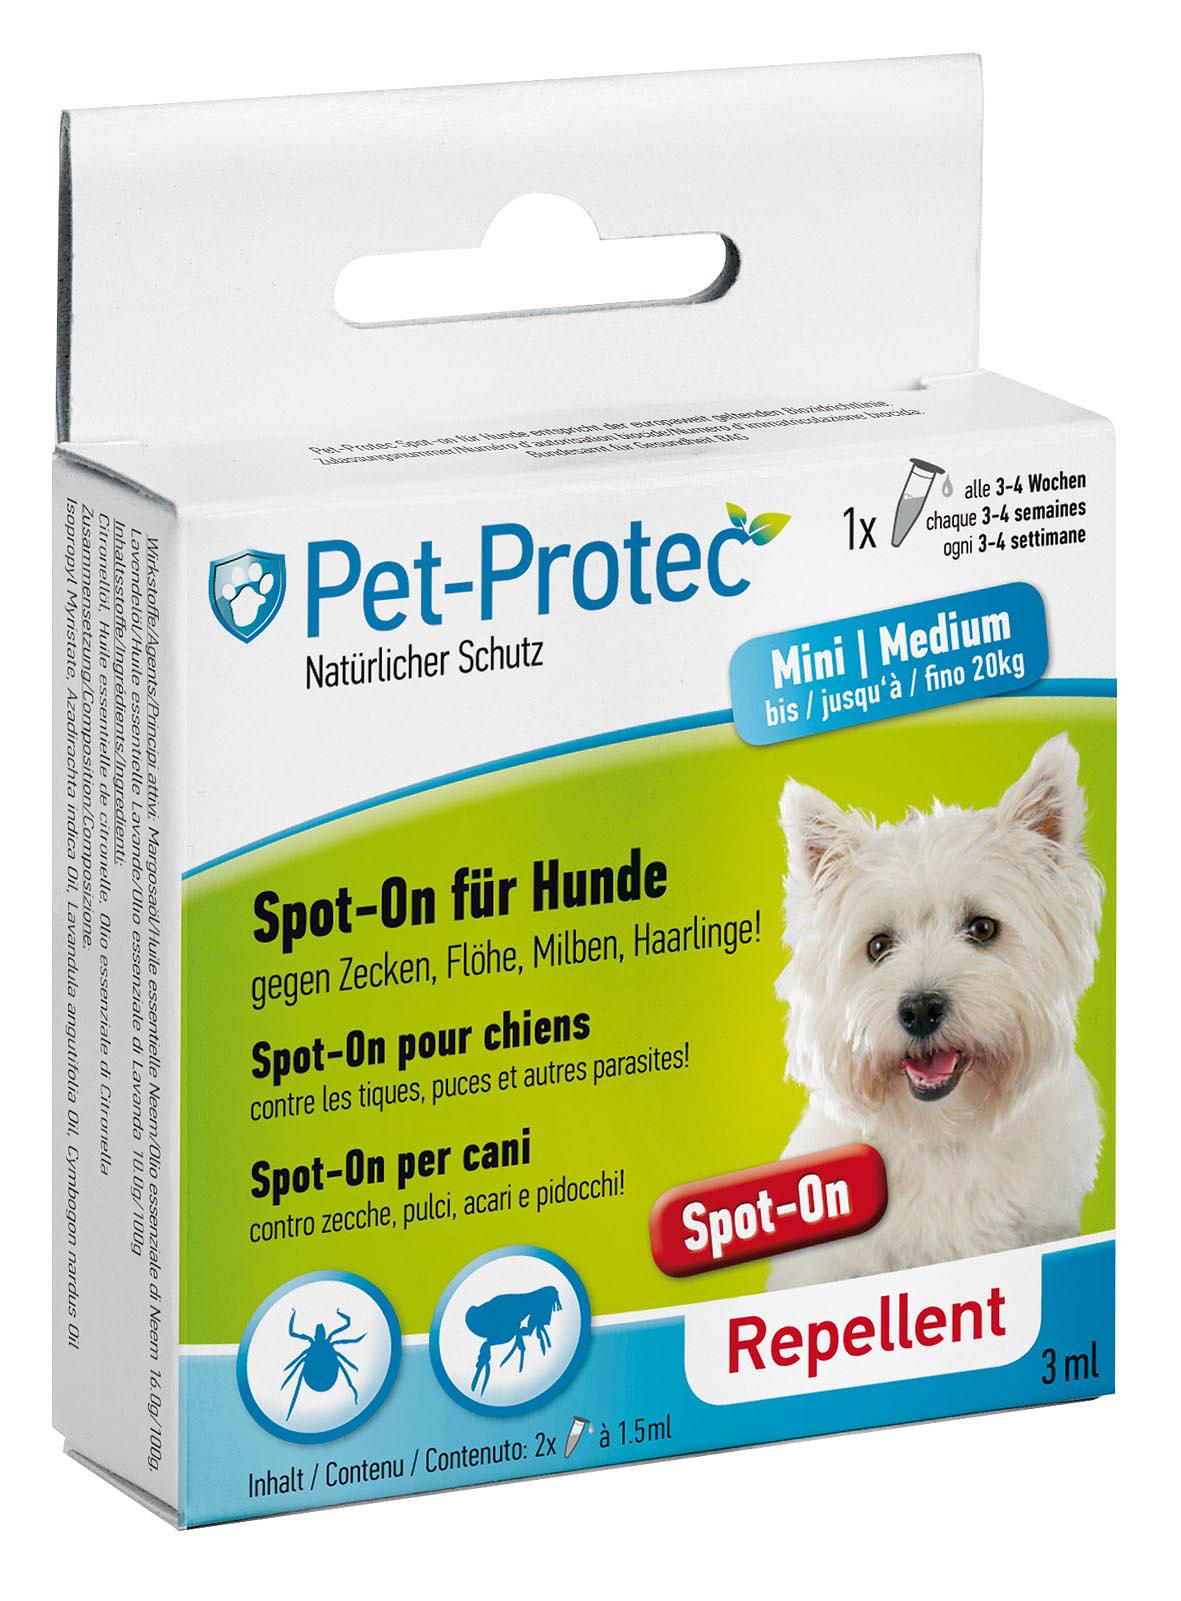 Pet-Protec Spot-on für Hunde Medium